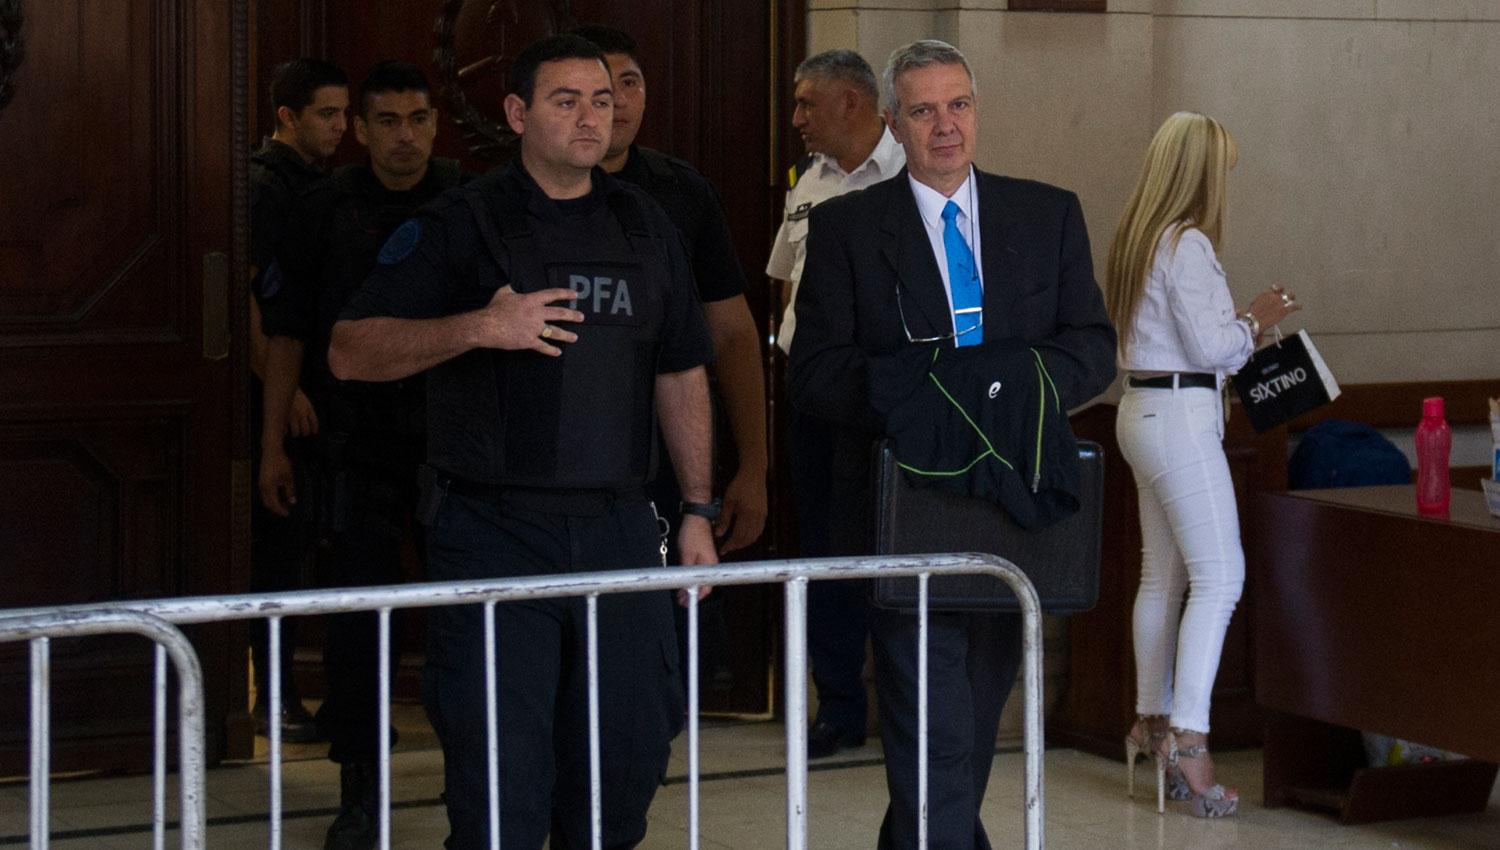 ULTIMA AUDIENCIA. Sánchez se retira custodiado por la Federal.  